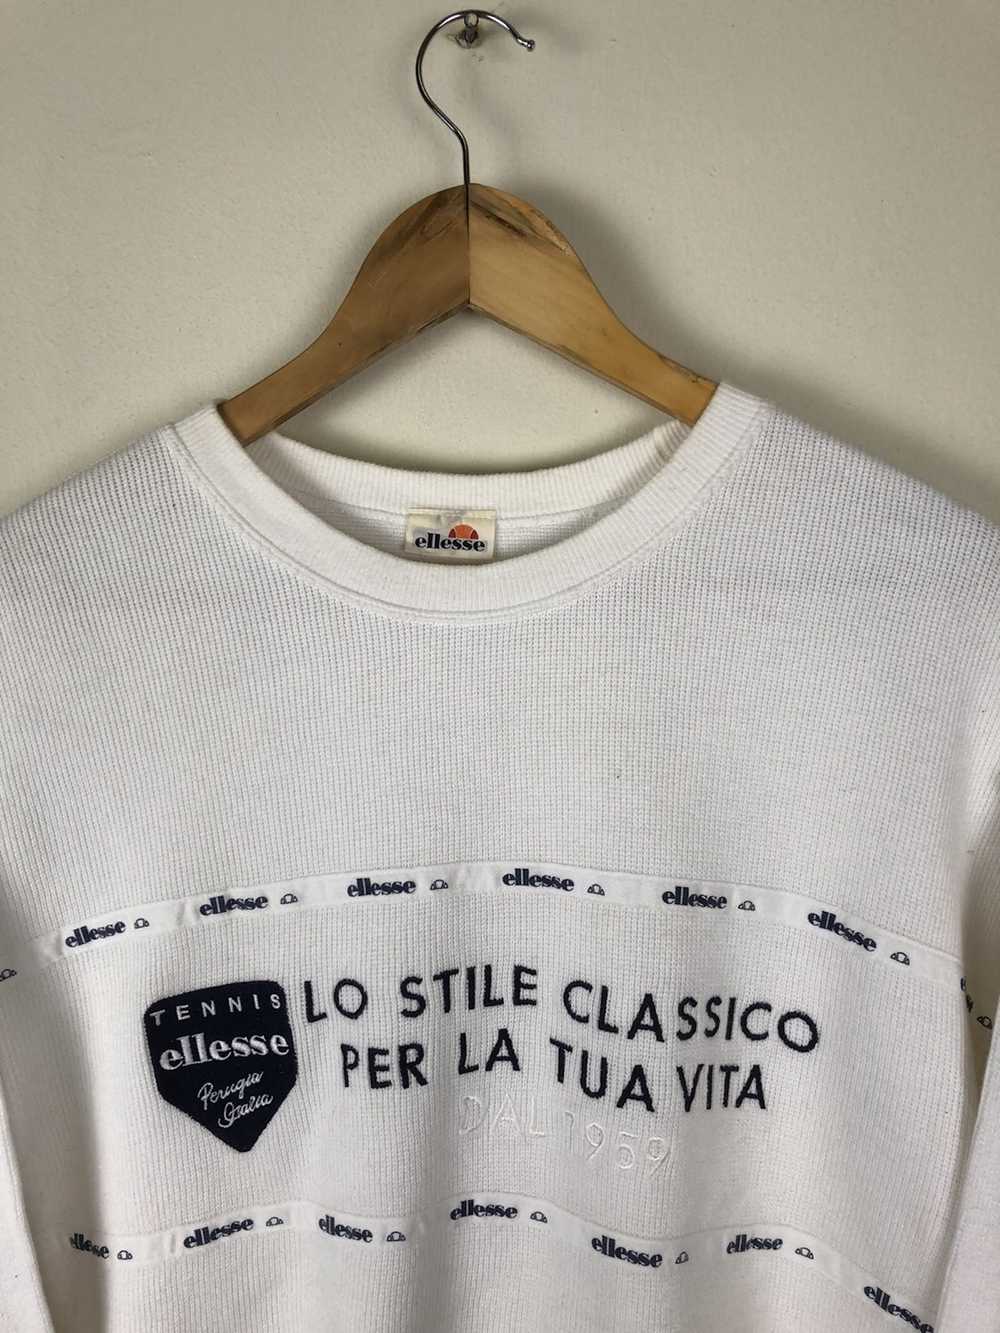 Ellesse Vintage 80’s Ellese Sweatshirt - image 3